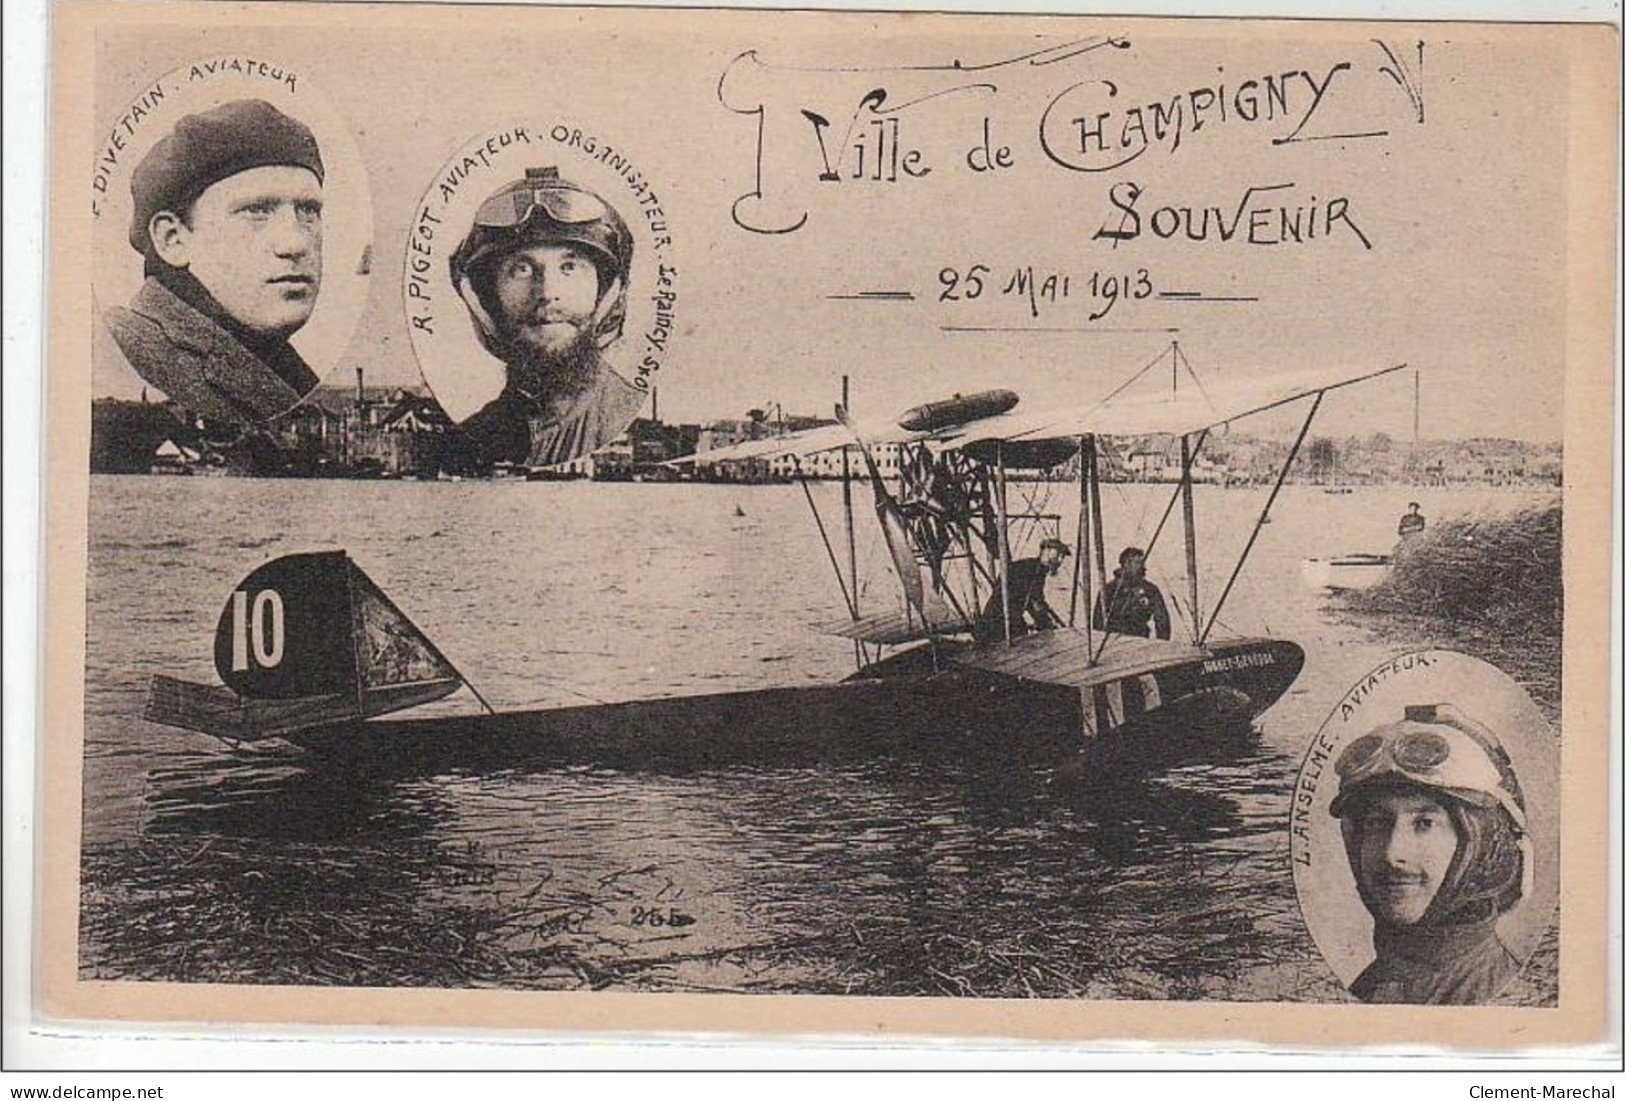 CHAMPIGNY : Souvenir De La Ville De Champigny - 2 Mai 1913 - Très Bon état - Champigny Sur Marne